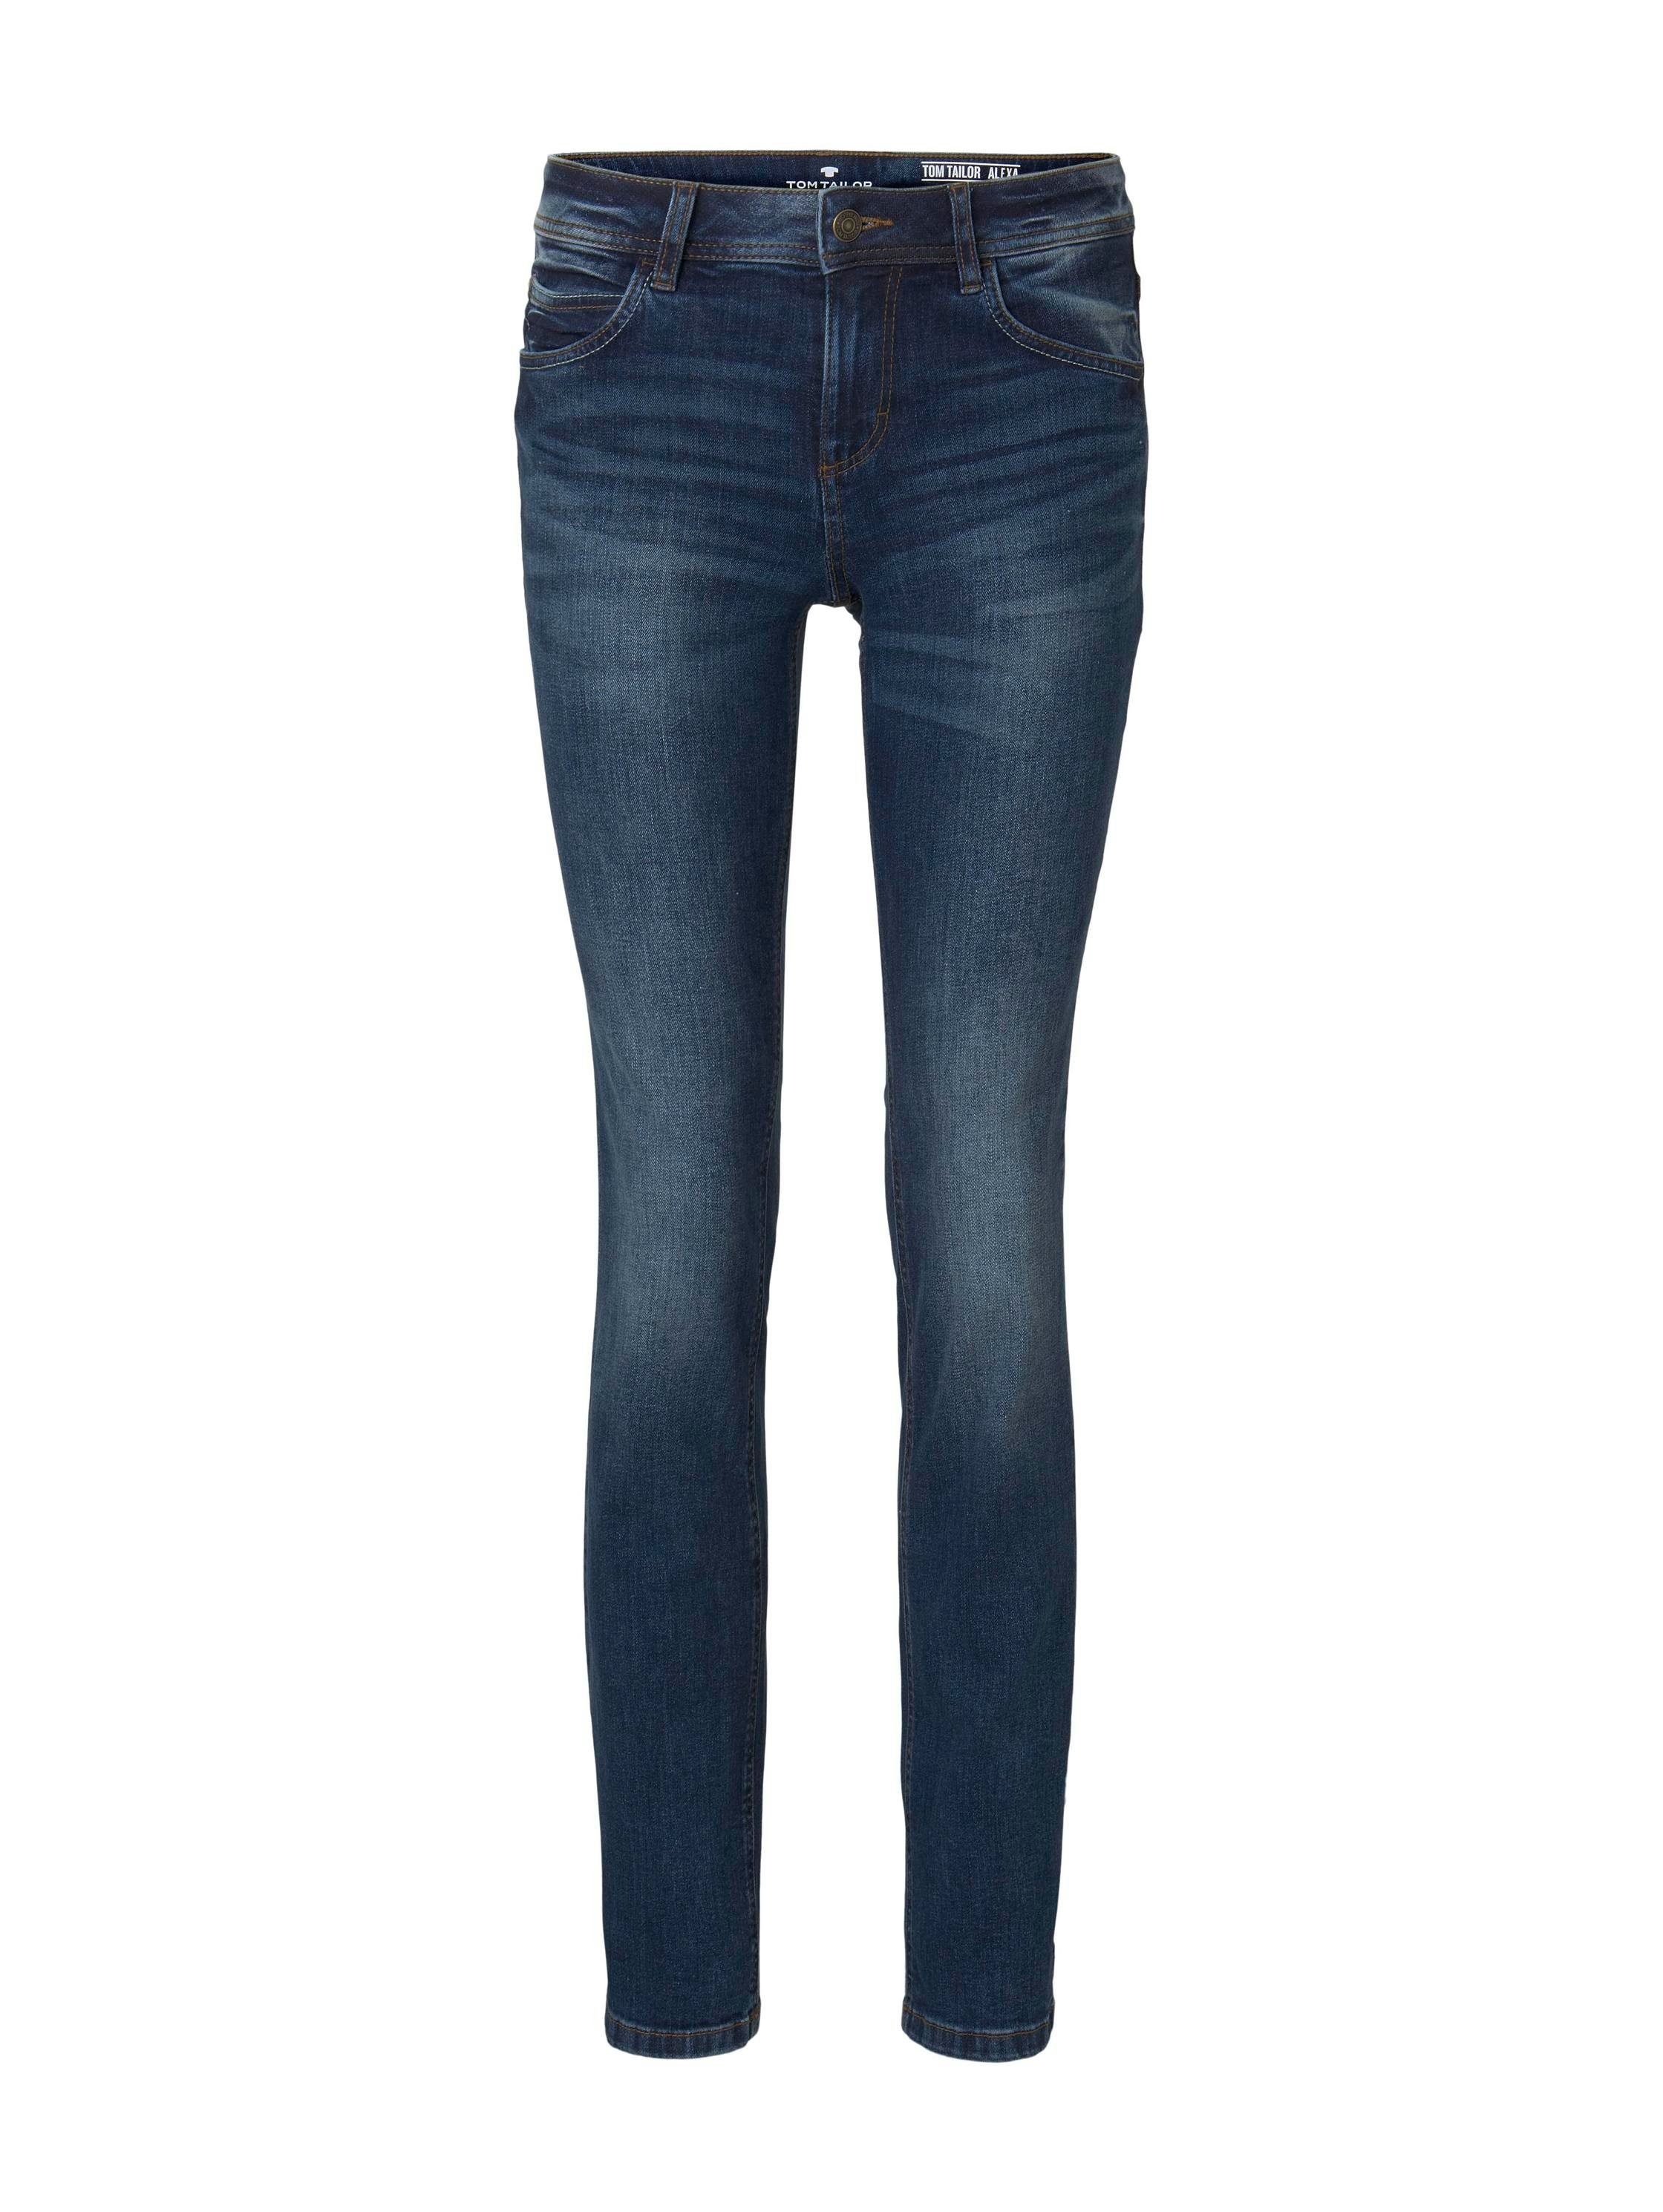 TOM mid Straight-Jeans TAILOR stone im Design klassischen wash